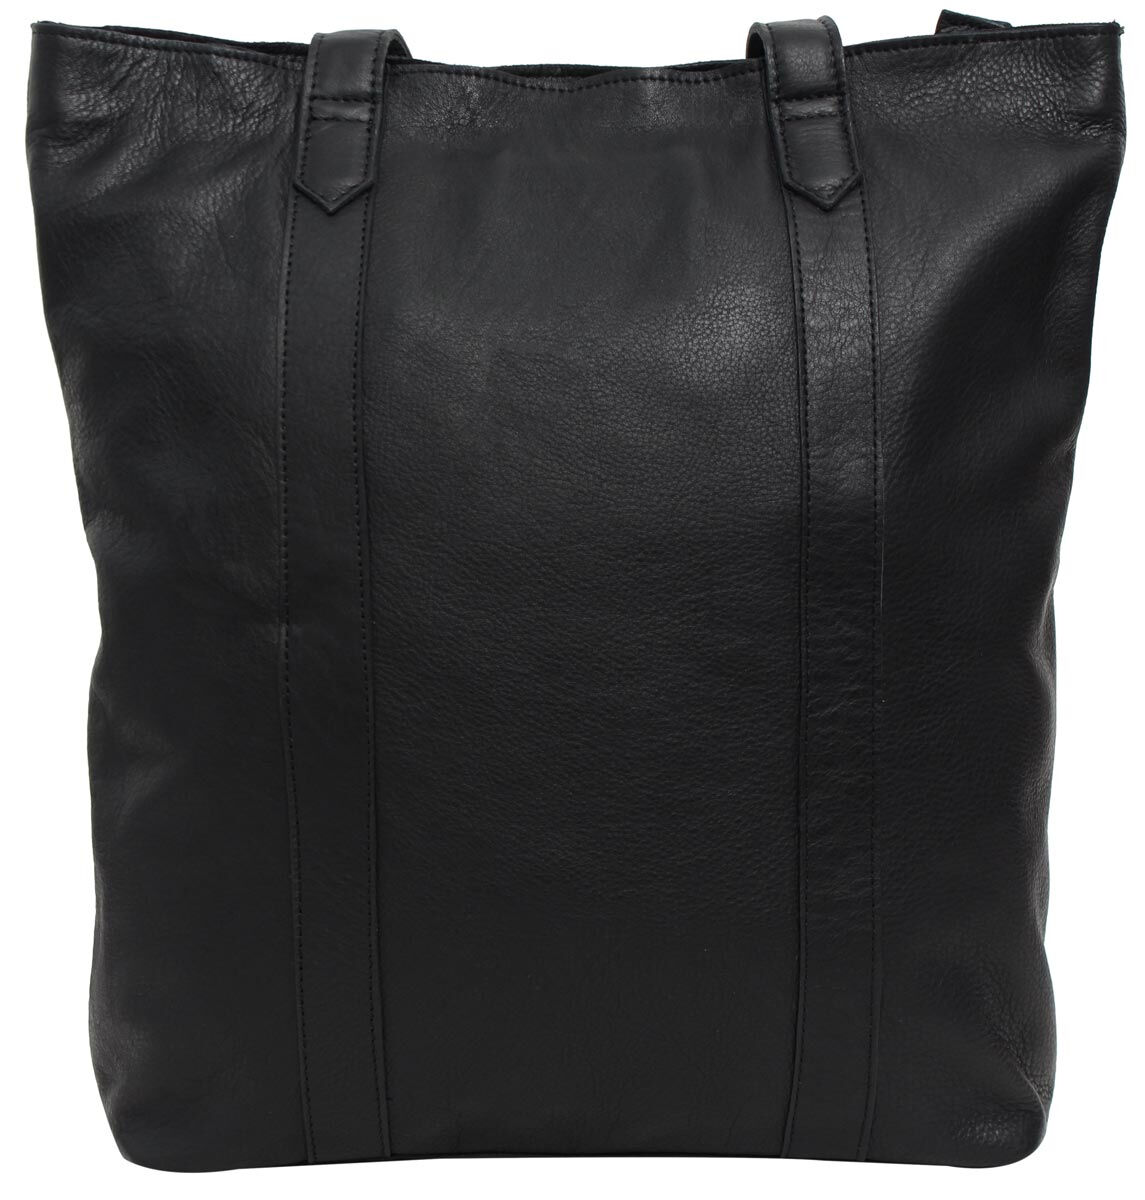 Tote bag “Paris” | Gusti Leather